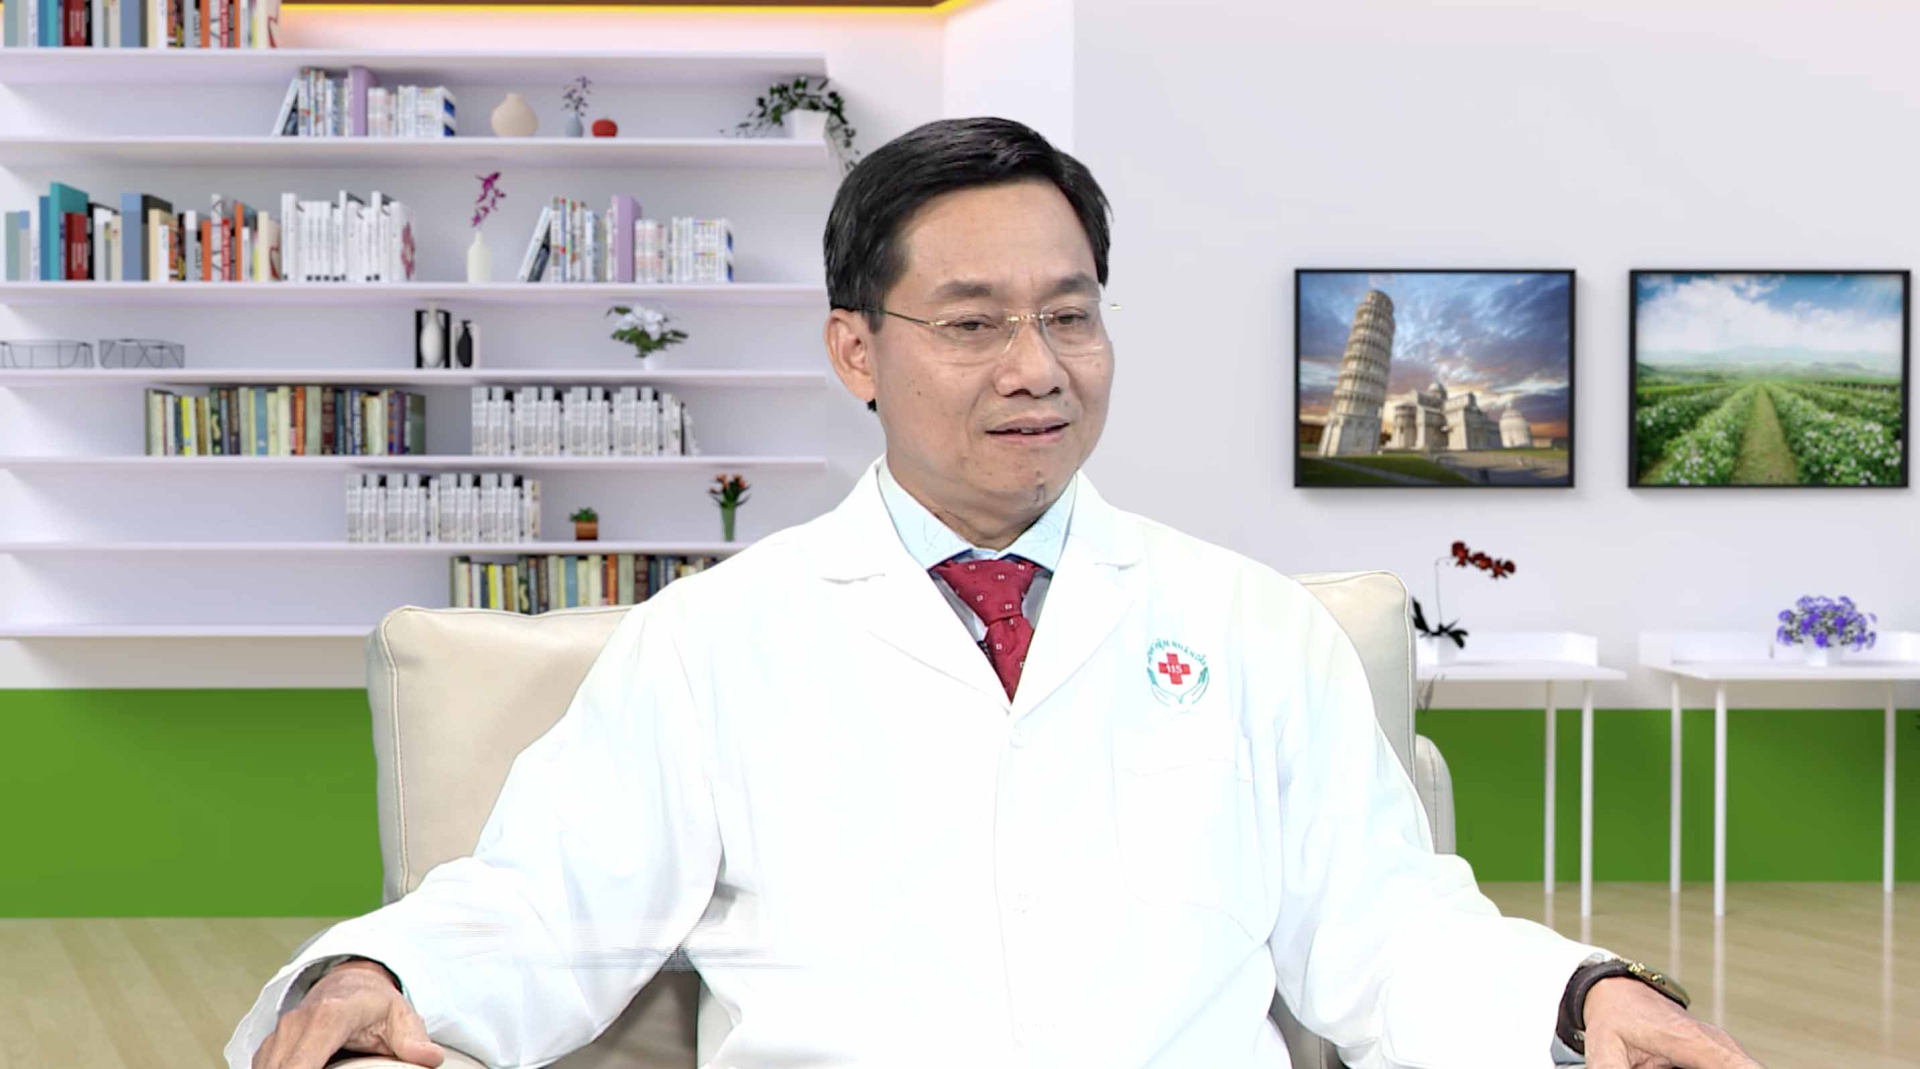 Thạc sĩ - Bác sĩ Trương Hoàng Minh chia sẻ về những phương pháp ghép thận hiện nay